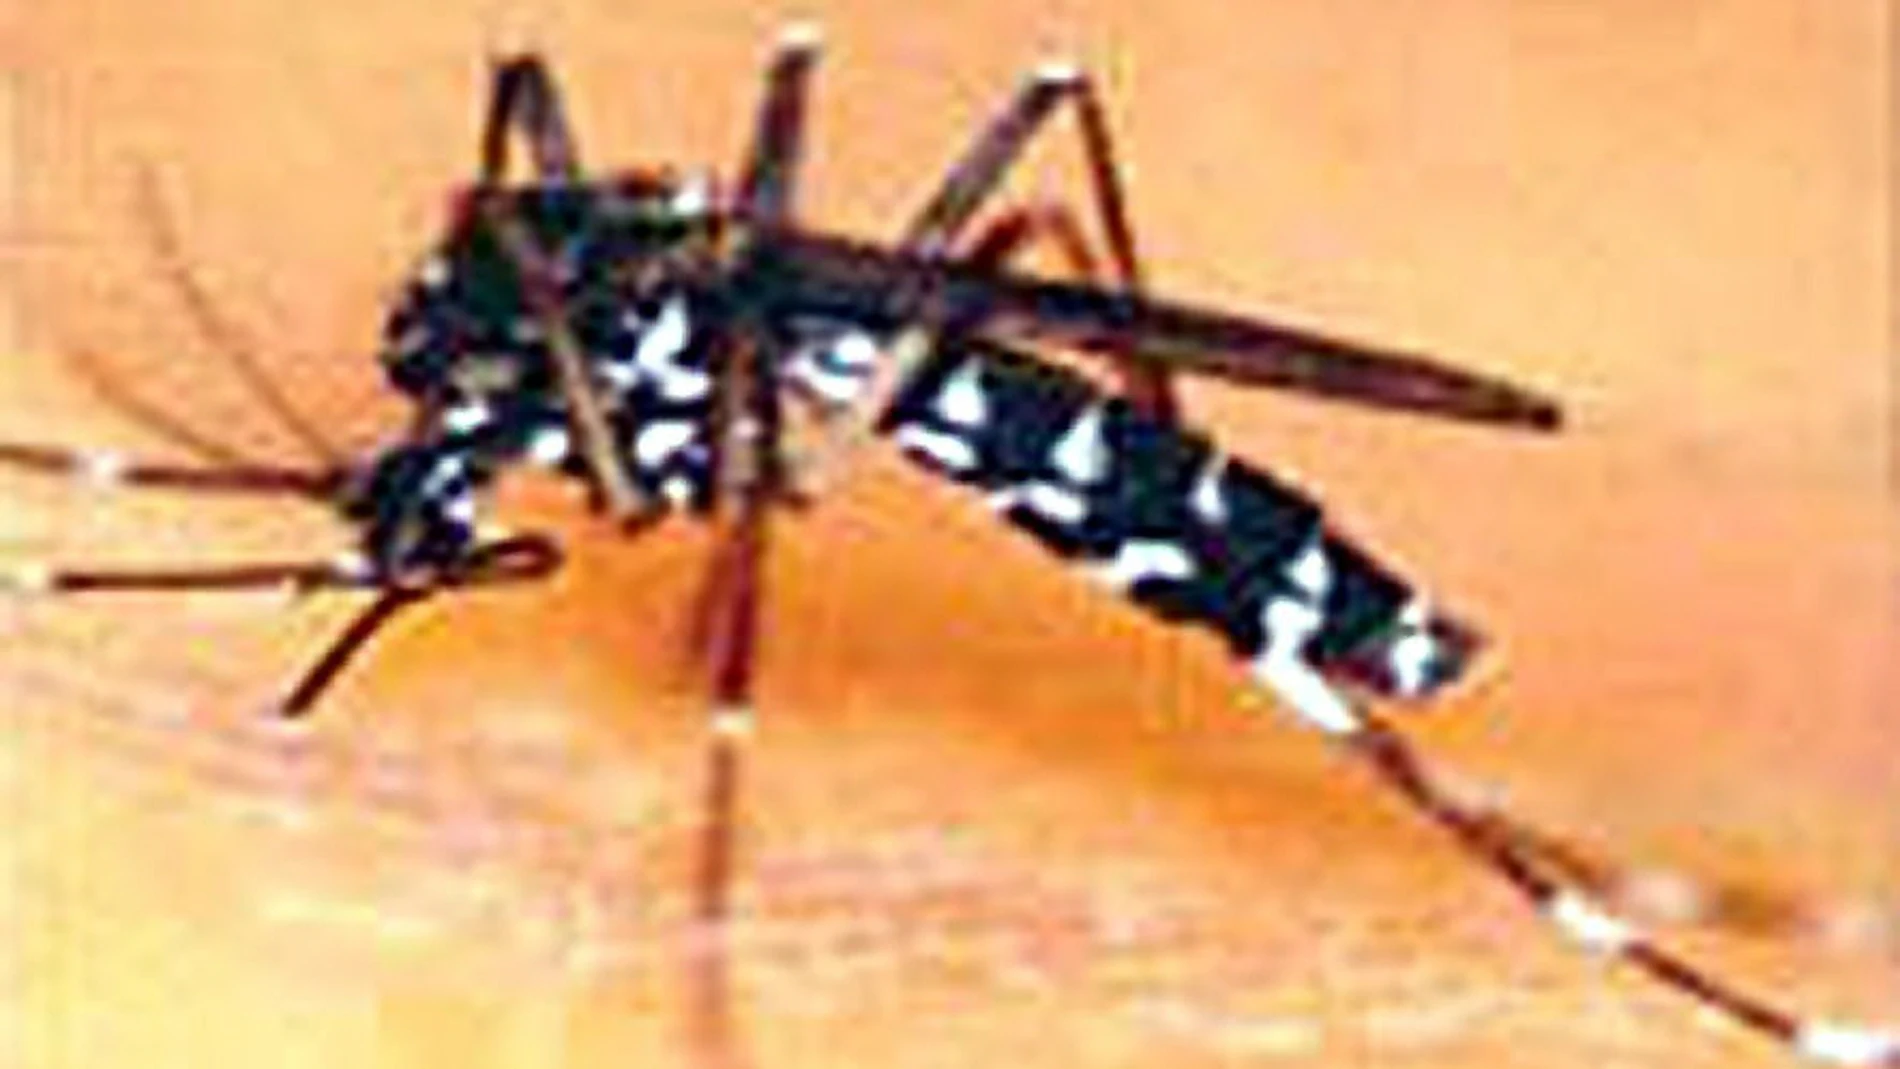 El mosquito tigre mide 5 milímetros, es negro con rayas blancas, vive en zonas con agua, pica sólo de día y su aguijón puede atravesar la ropa